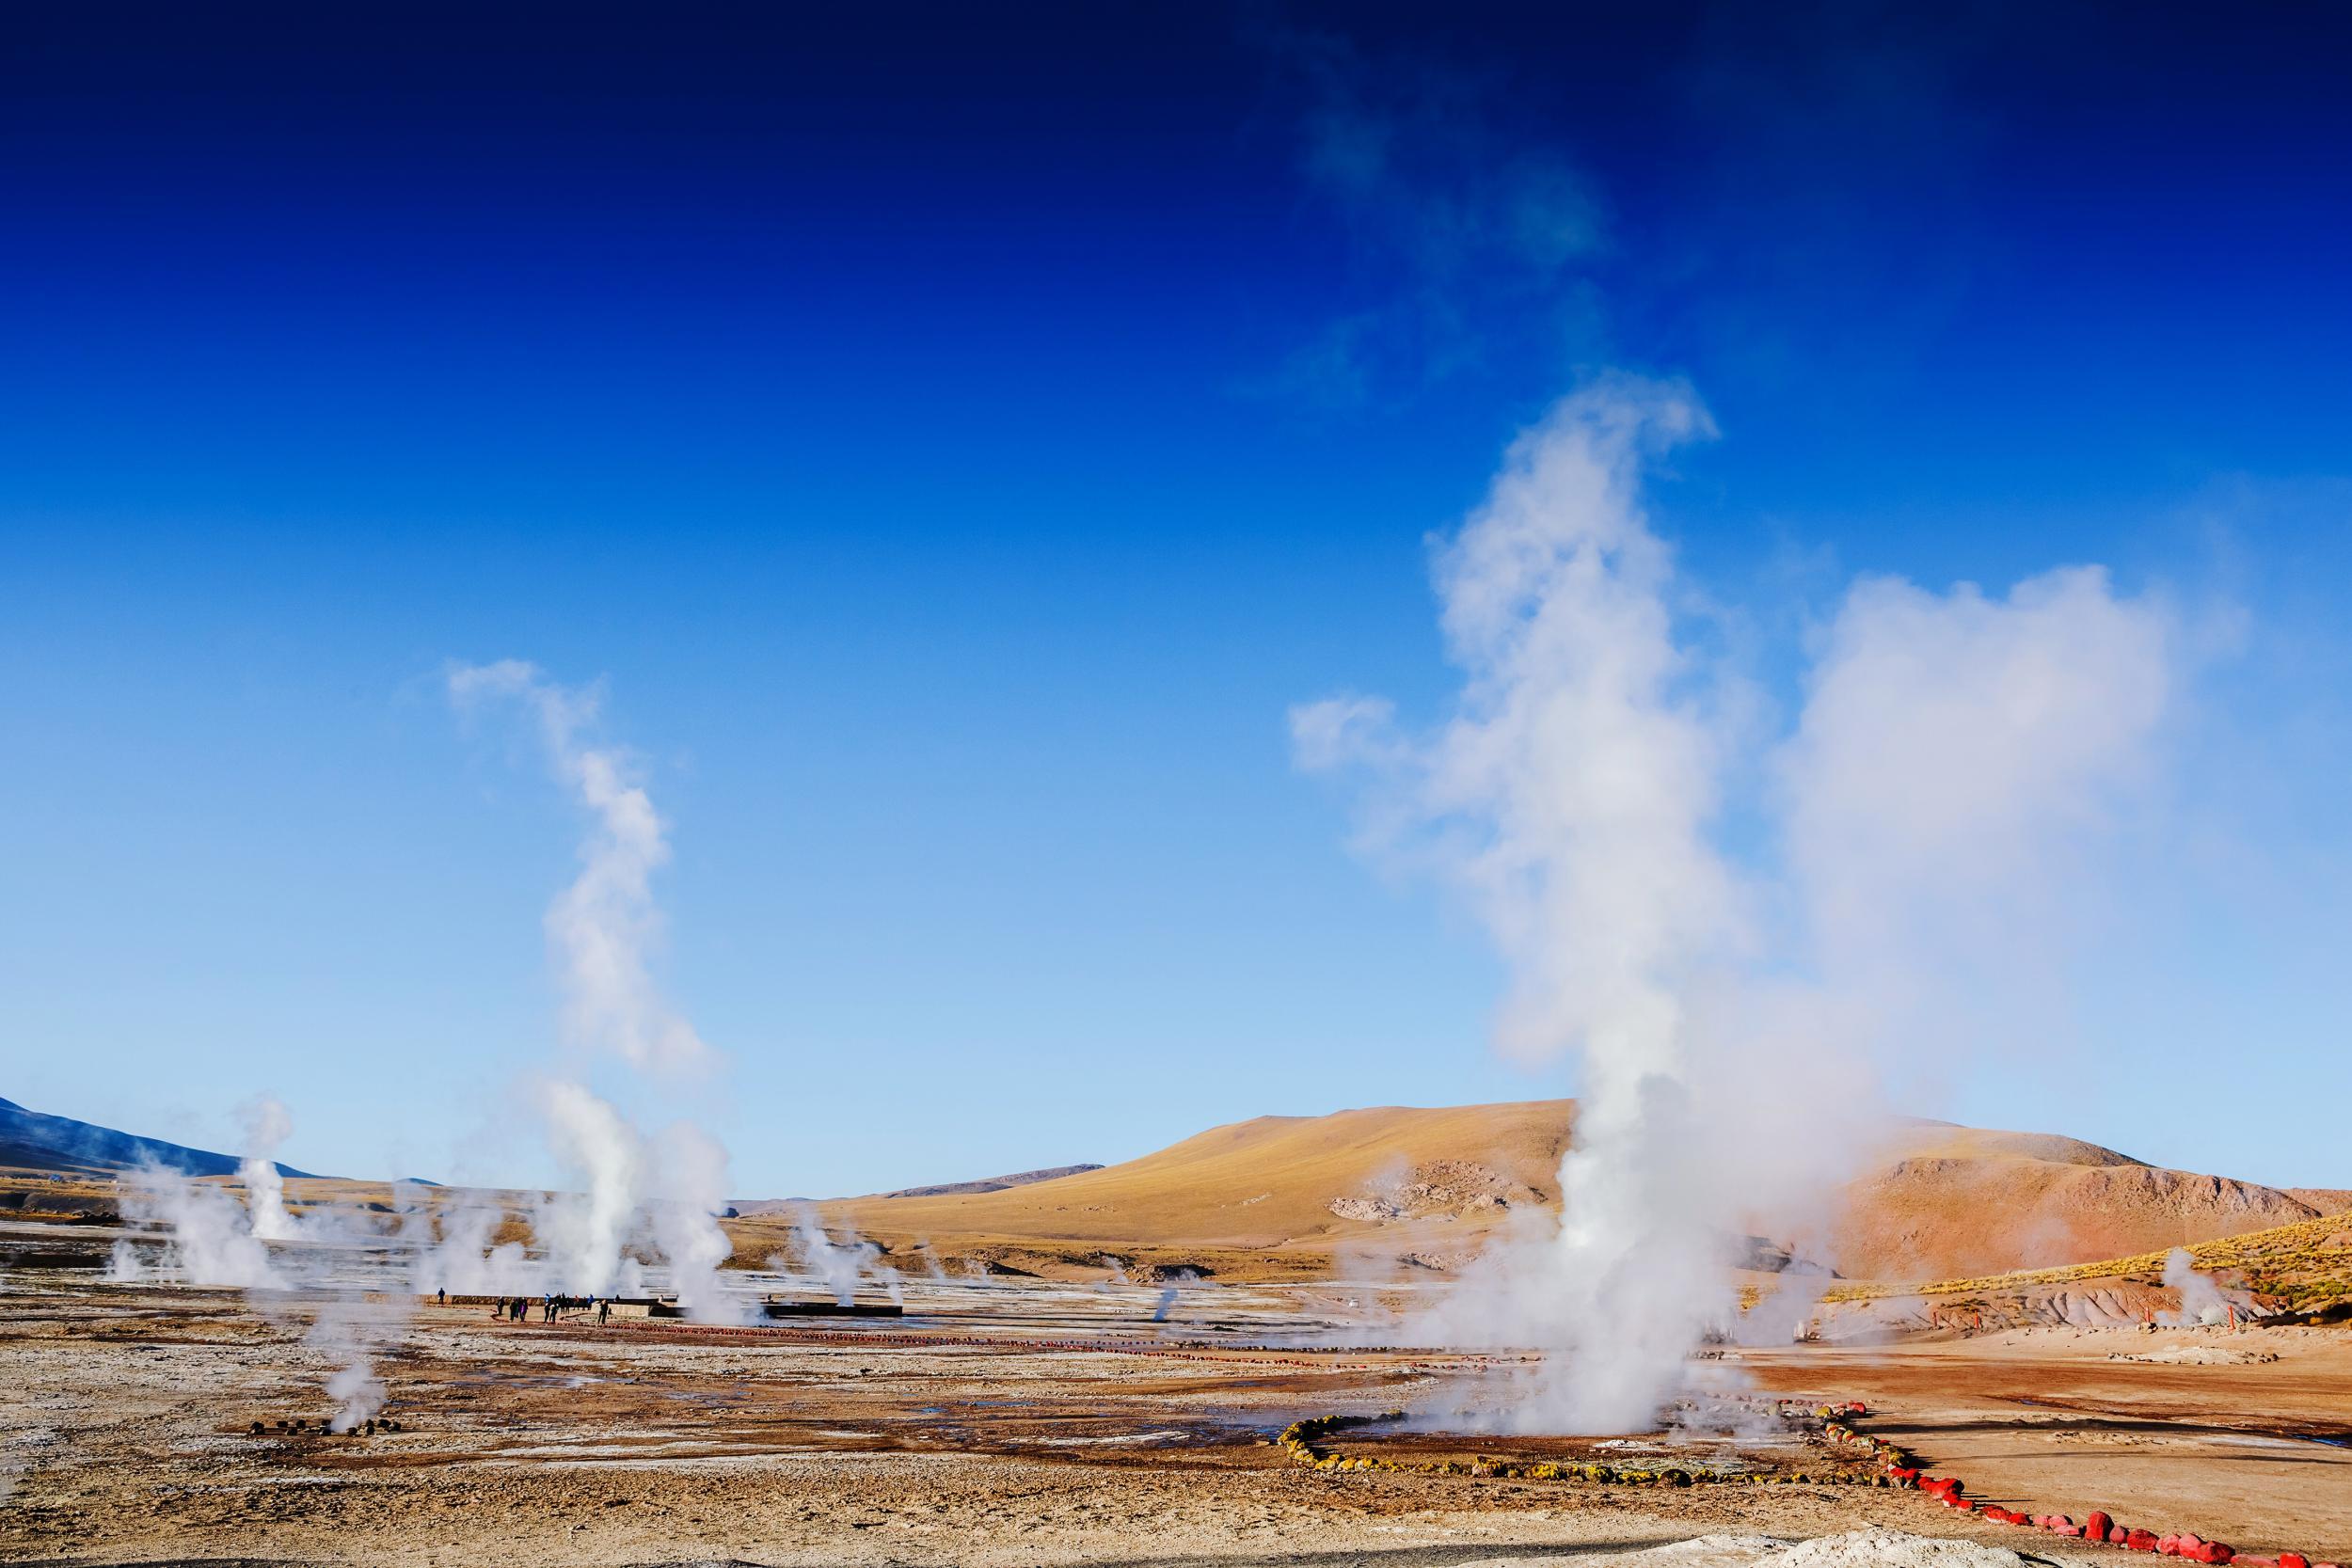 The El Tatio geyser field creates an uncharacteristically moist landscape